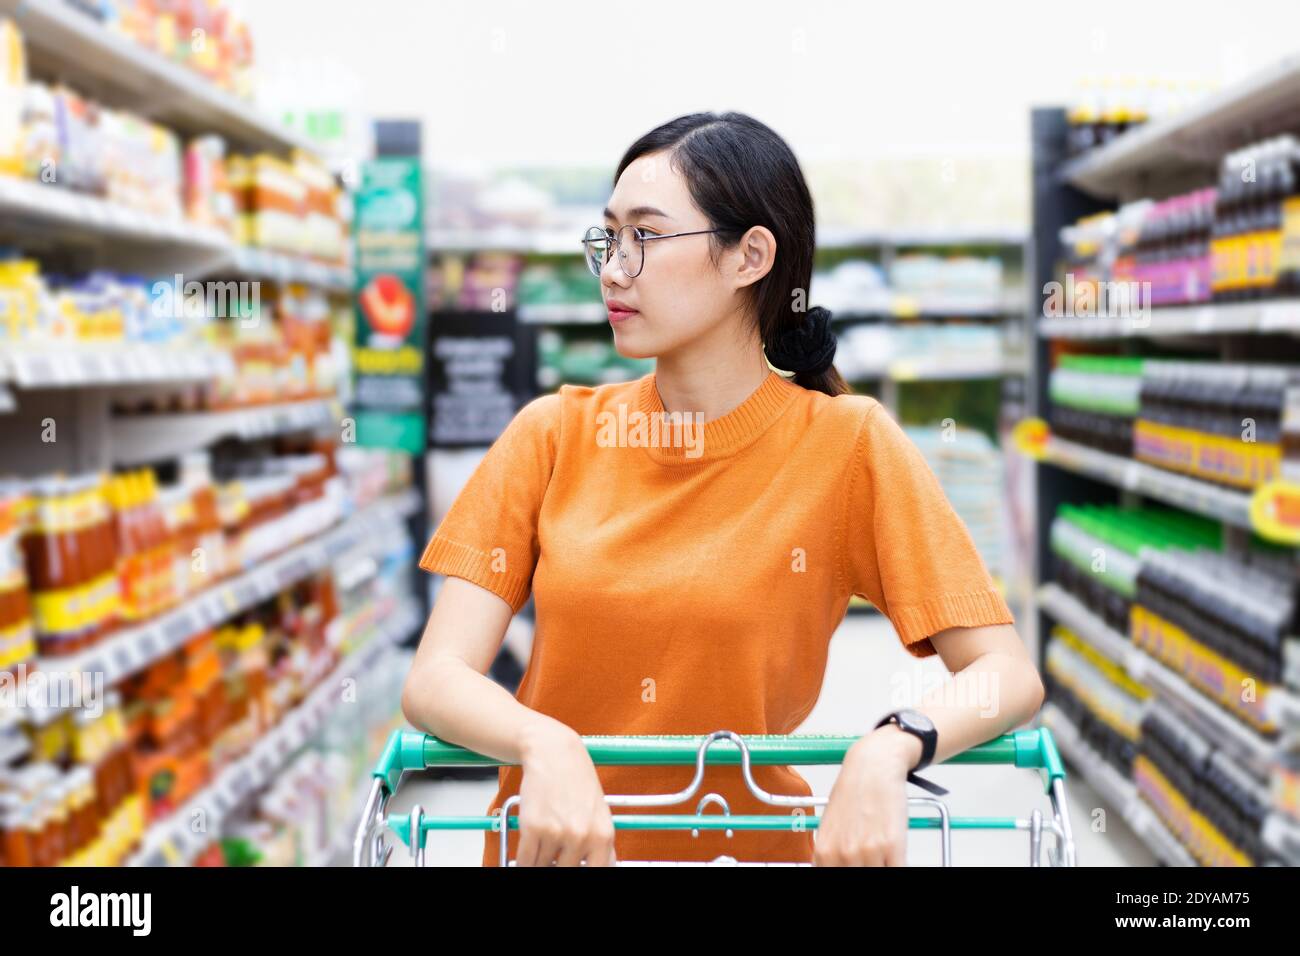 Asiatische Frau genießen Einkaufen in Einkaufszentrum Griff Warenkorb Blick auf Supermarkt Regal Stockfoto